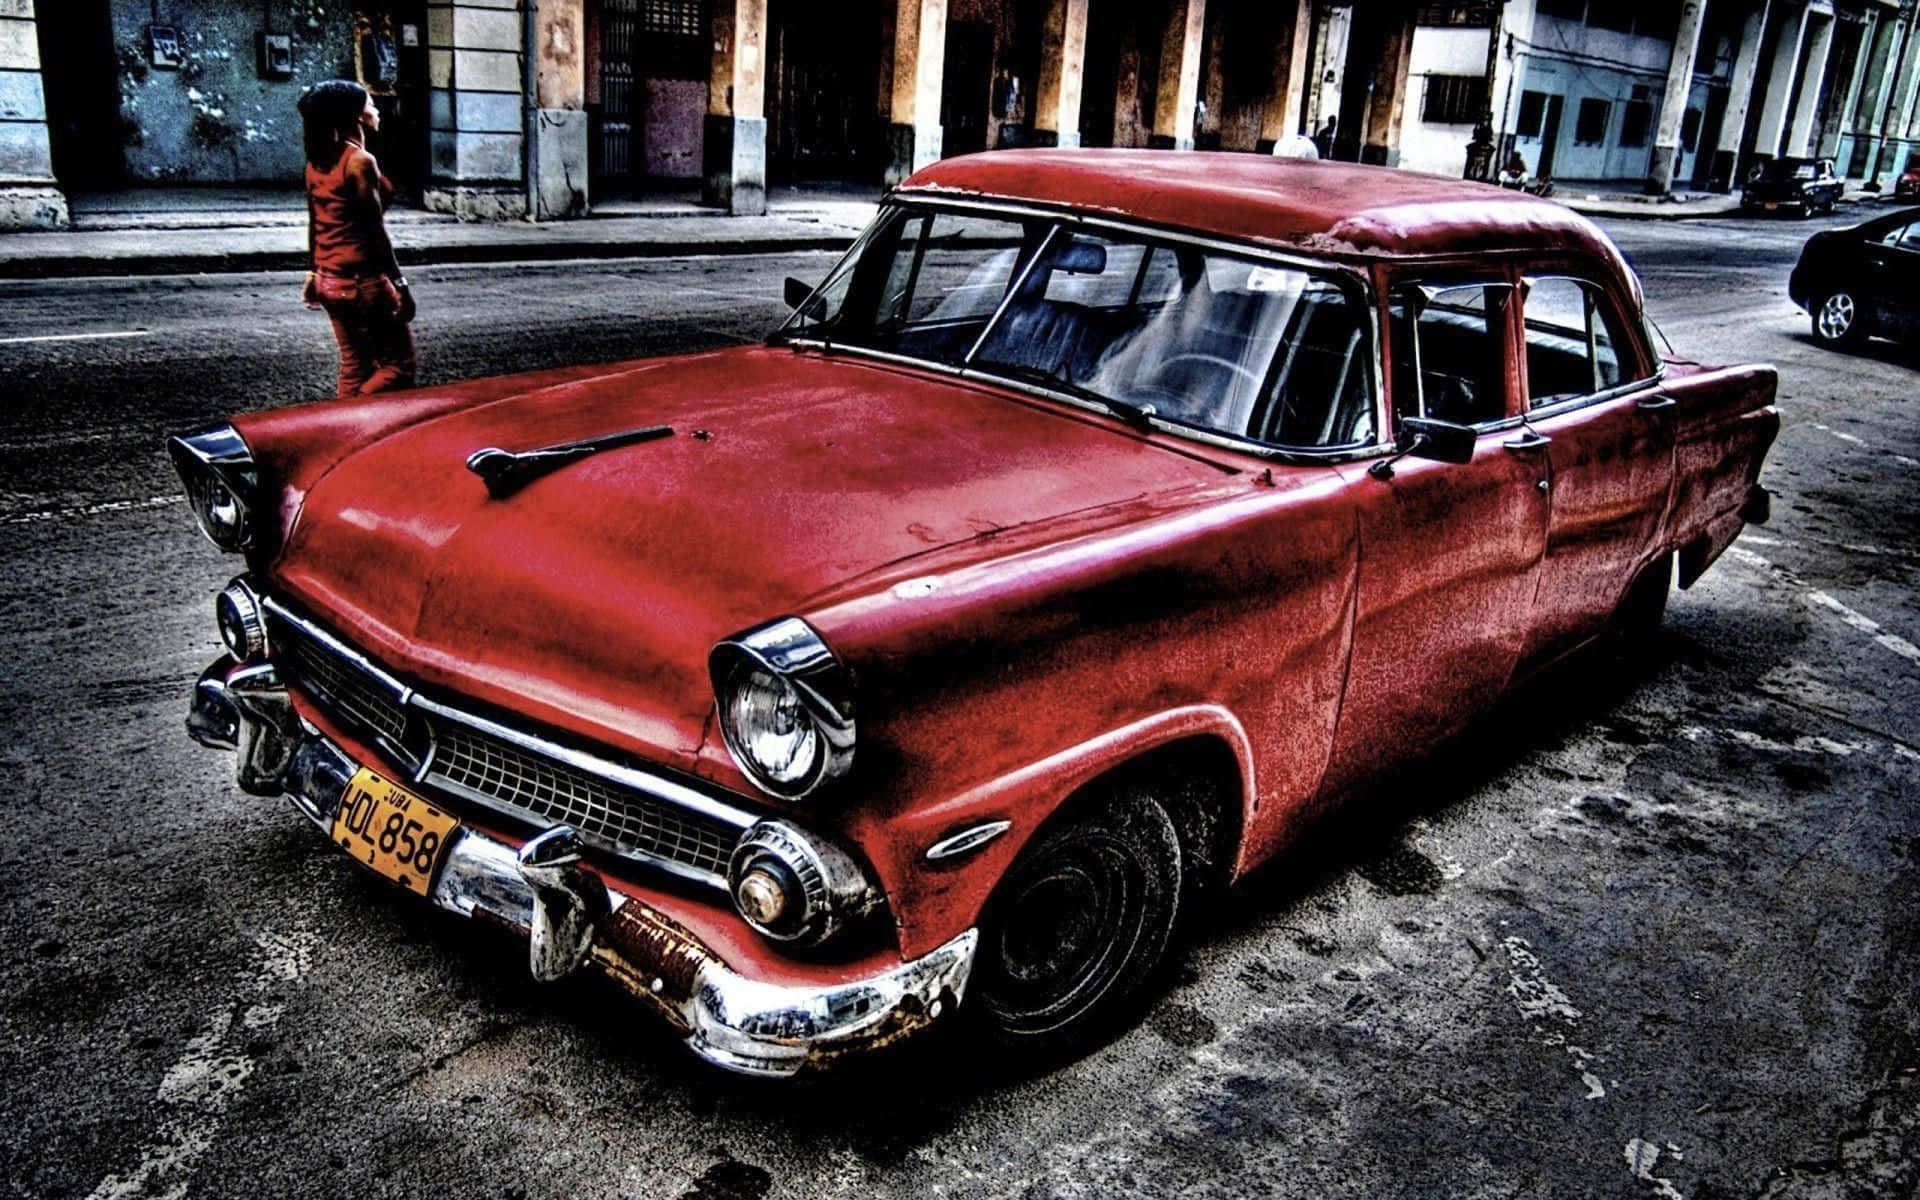 Einrotes Auto Parkt Auf Der Straße In Kuba. Wallpaper